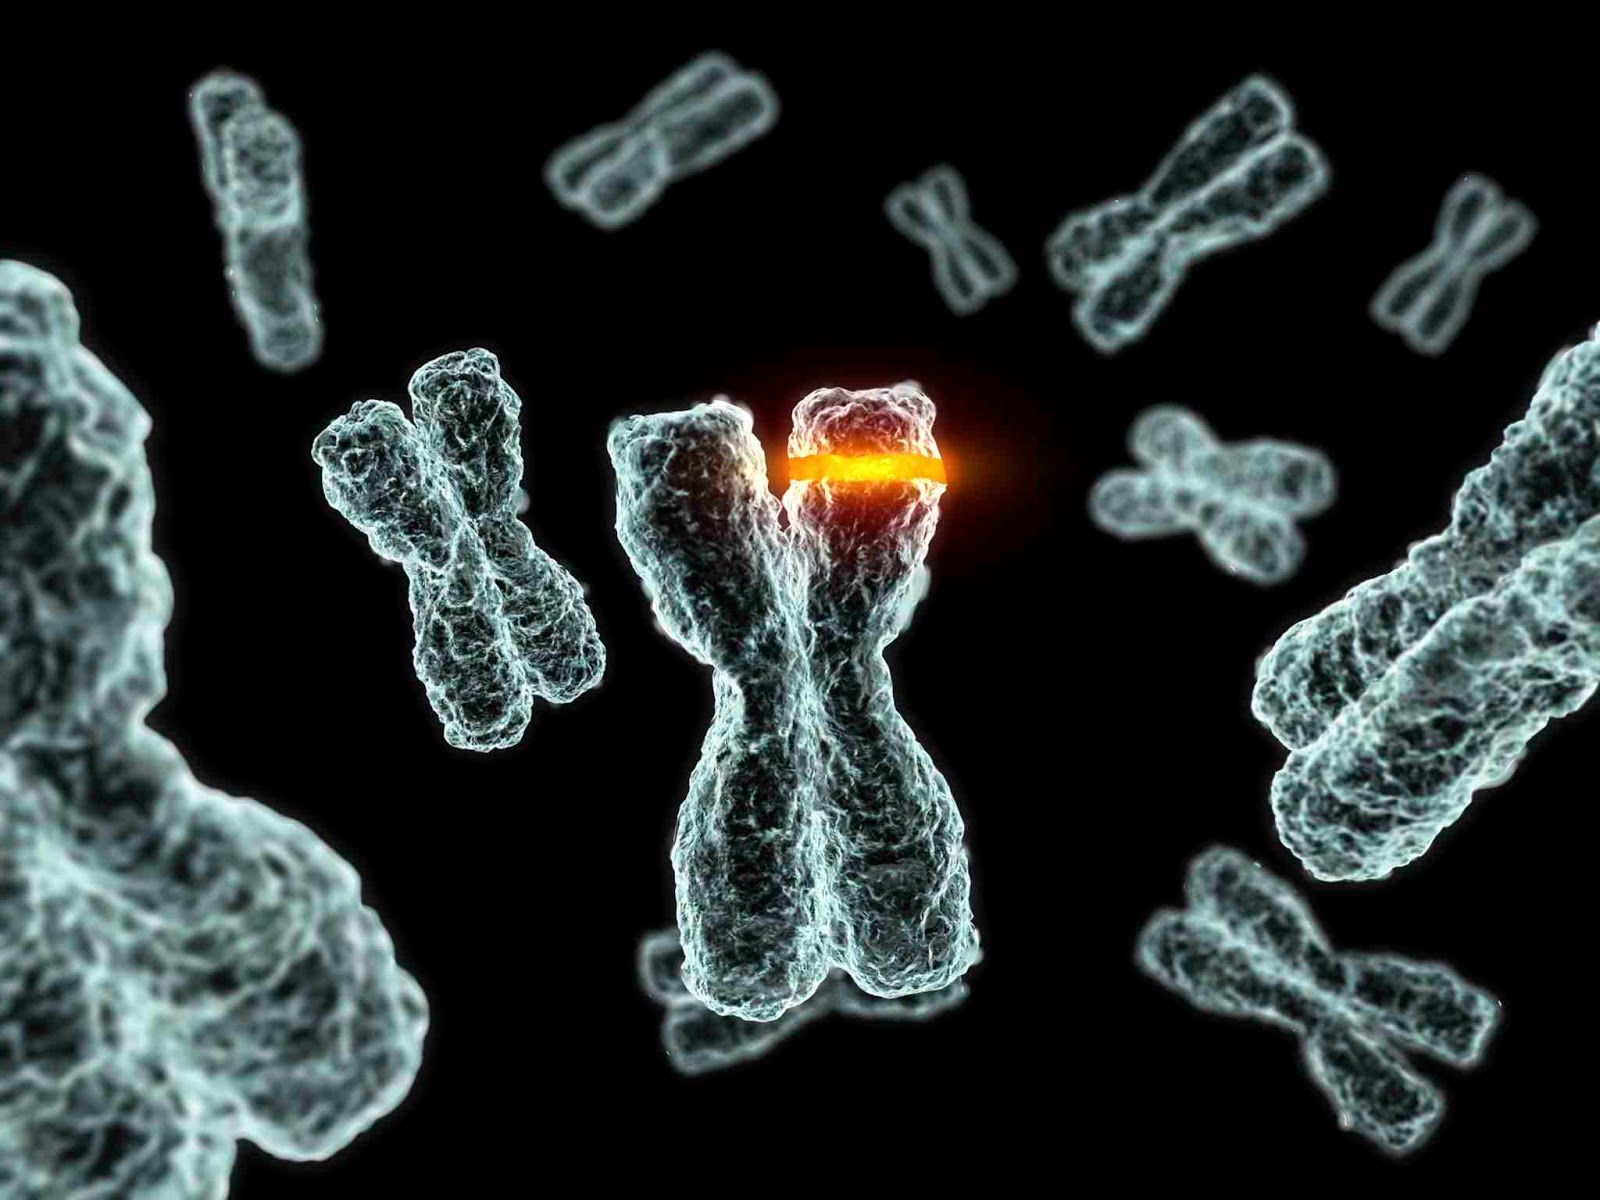 Enfermedades genéticas del ADN mitocondrial humano